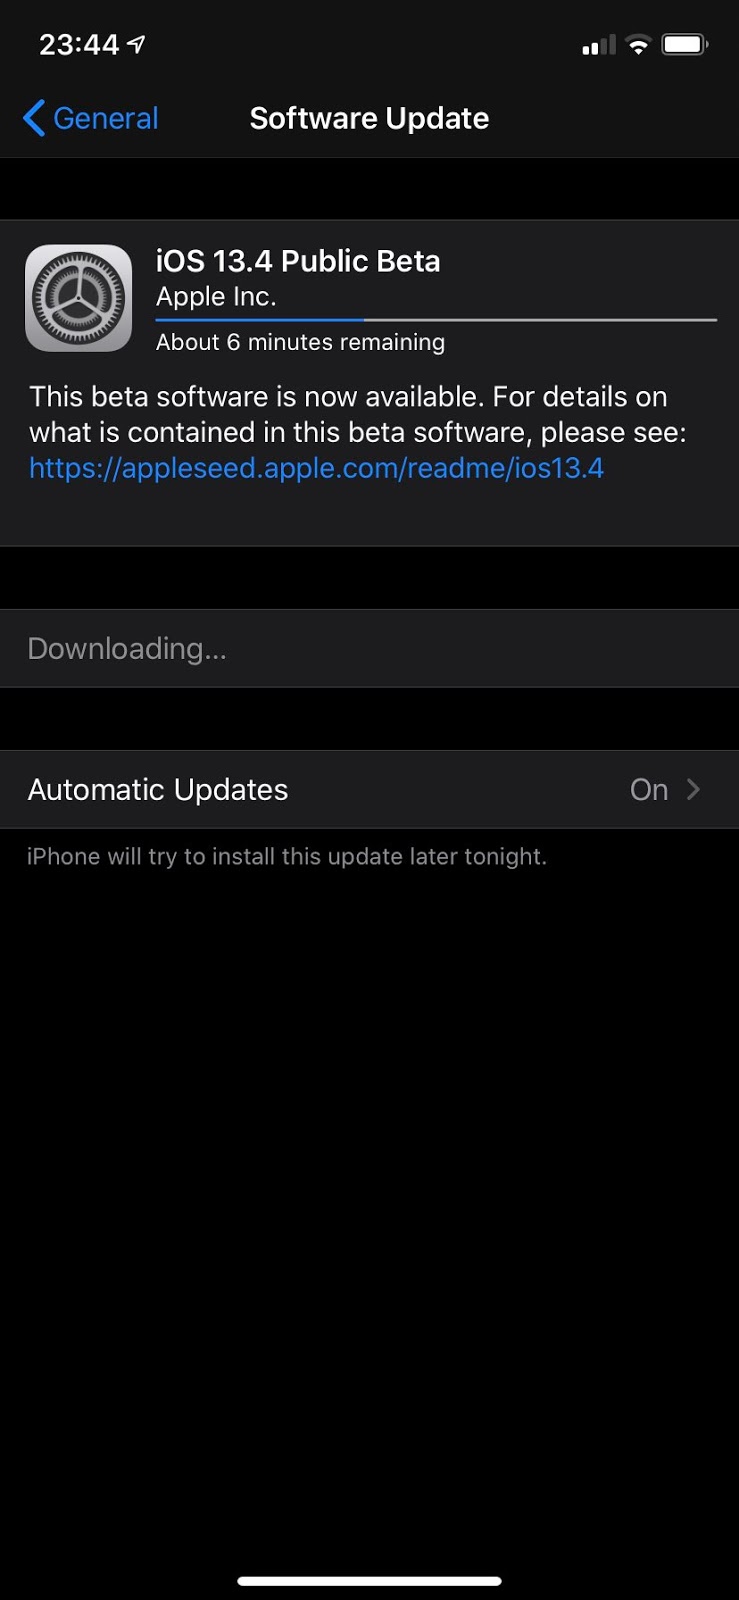 蘋果發布 iOS 13.4 和 macOS 10.15.4 首個公測版 | Apple News, iOS 13.4, macOS Catalina 10.15.4 | iPhone News 愛瘋了